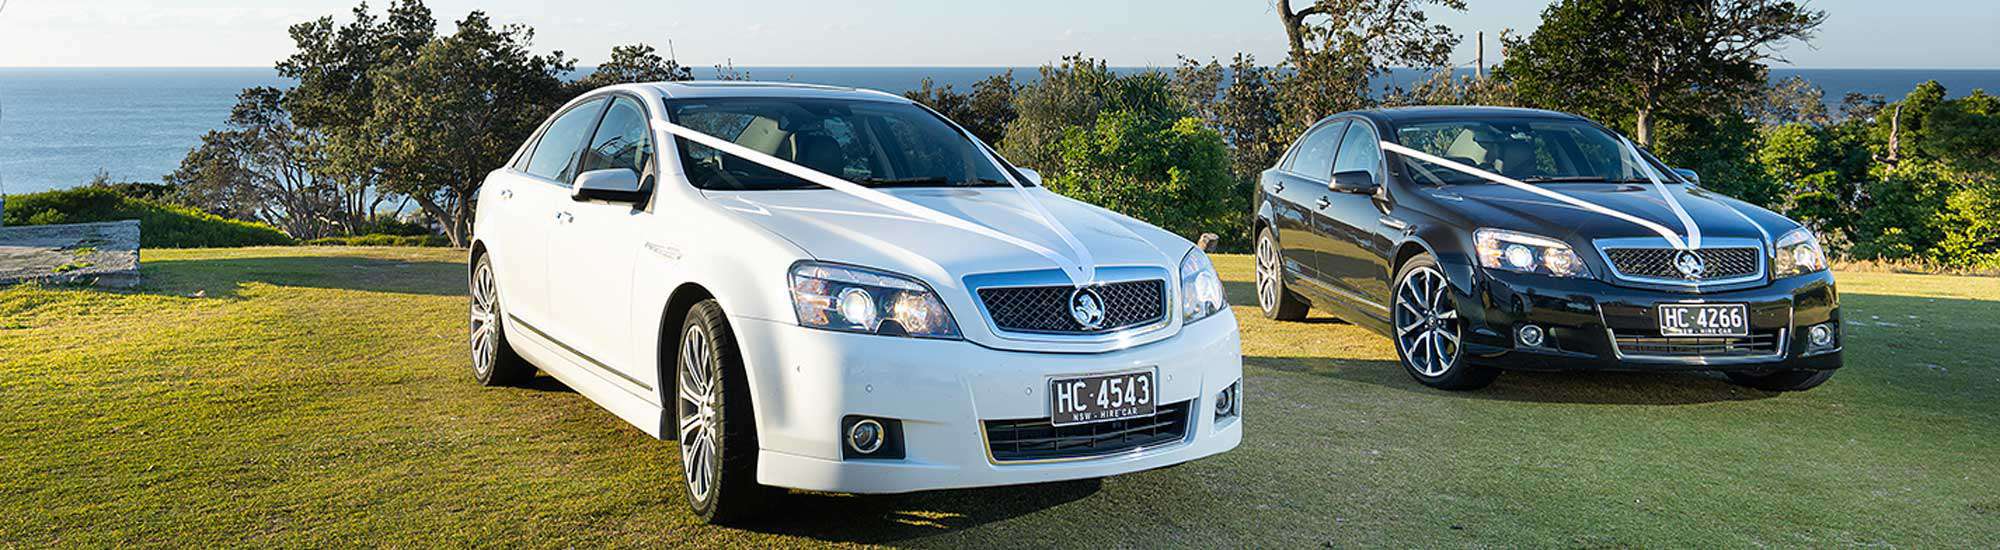 Luxury Wedding Car Sedans